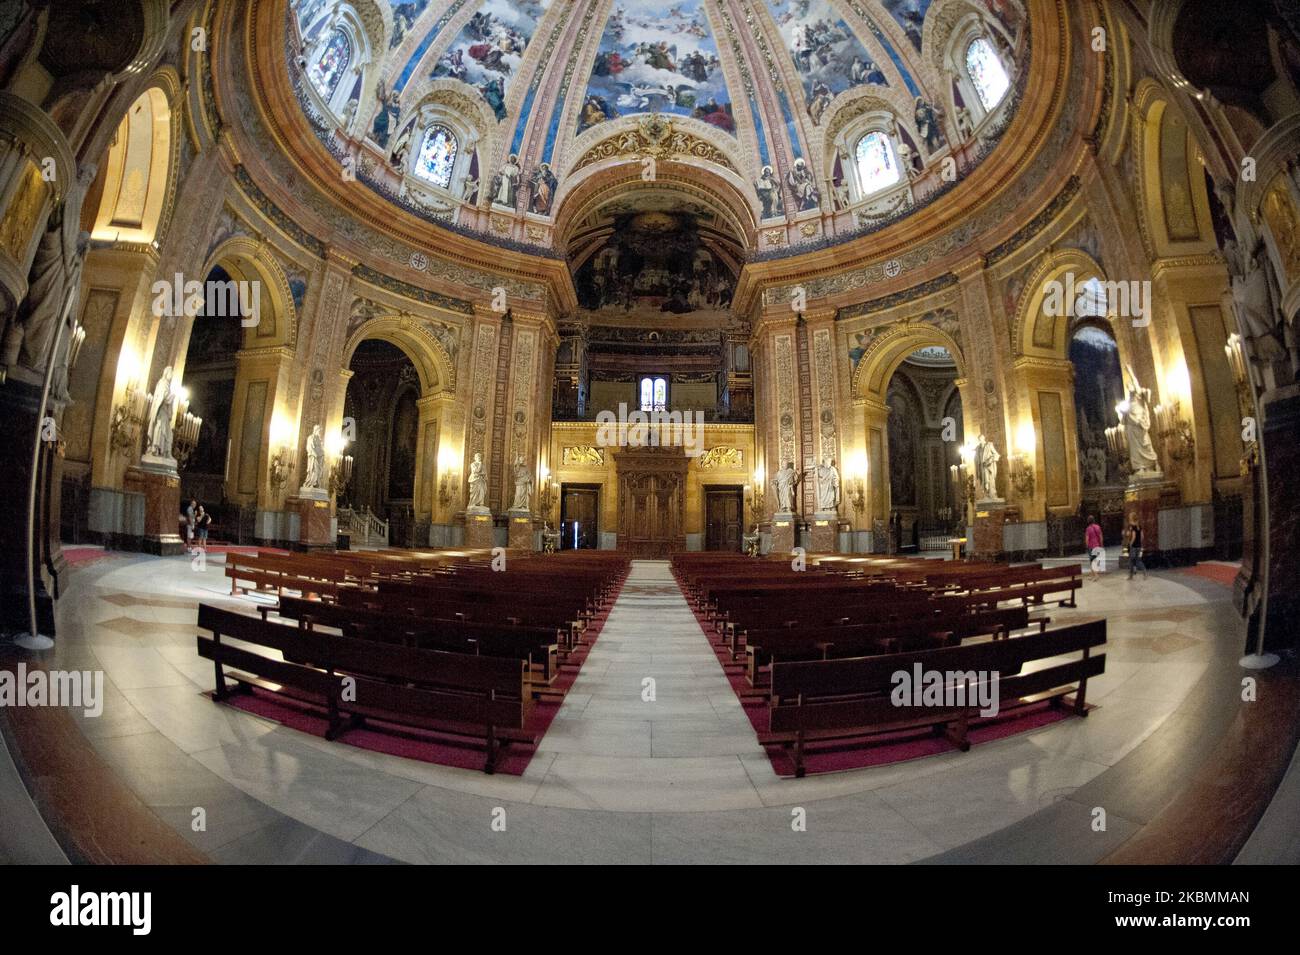 Blick auf die königliche Basilika San Francisco el Grande, es ist eine katholische Kirche im historischen Zentrum von Madrid. Neoklassizistisch im Stil in der zweiten Hälfte des 18.. Jahrhunderts, sticht es durch seine Kuppel hervor, die die dritte mit dem größten Durchmesser ist. In Madrid. Spanien (Foto von Oscar Gonzalez/NurPhoto) Stockfoto